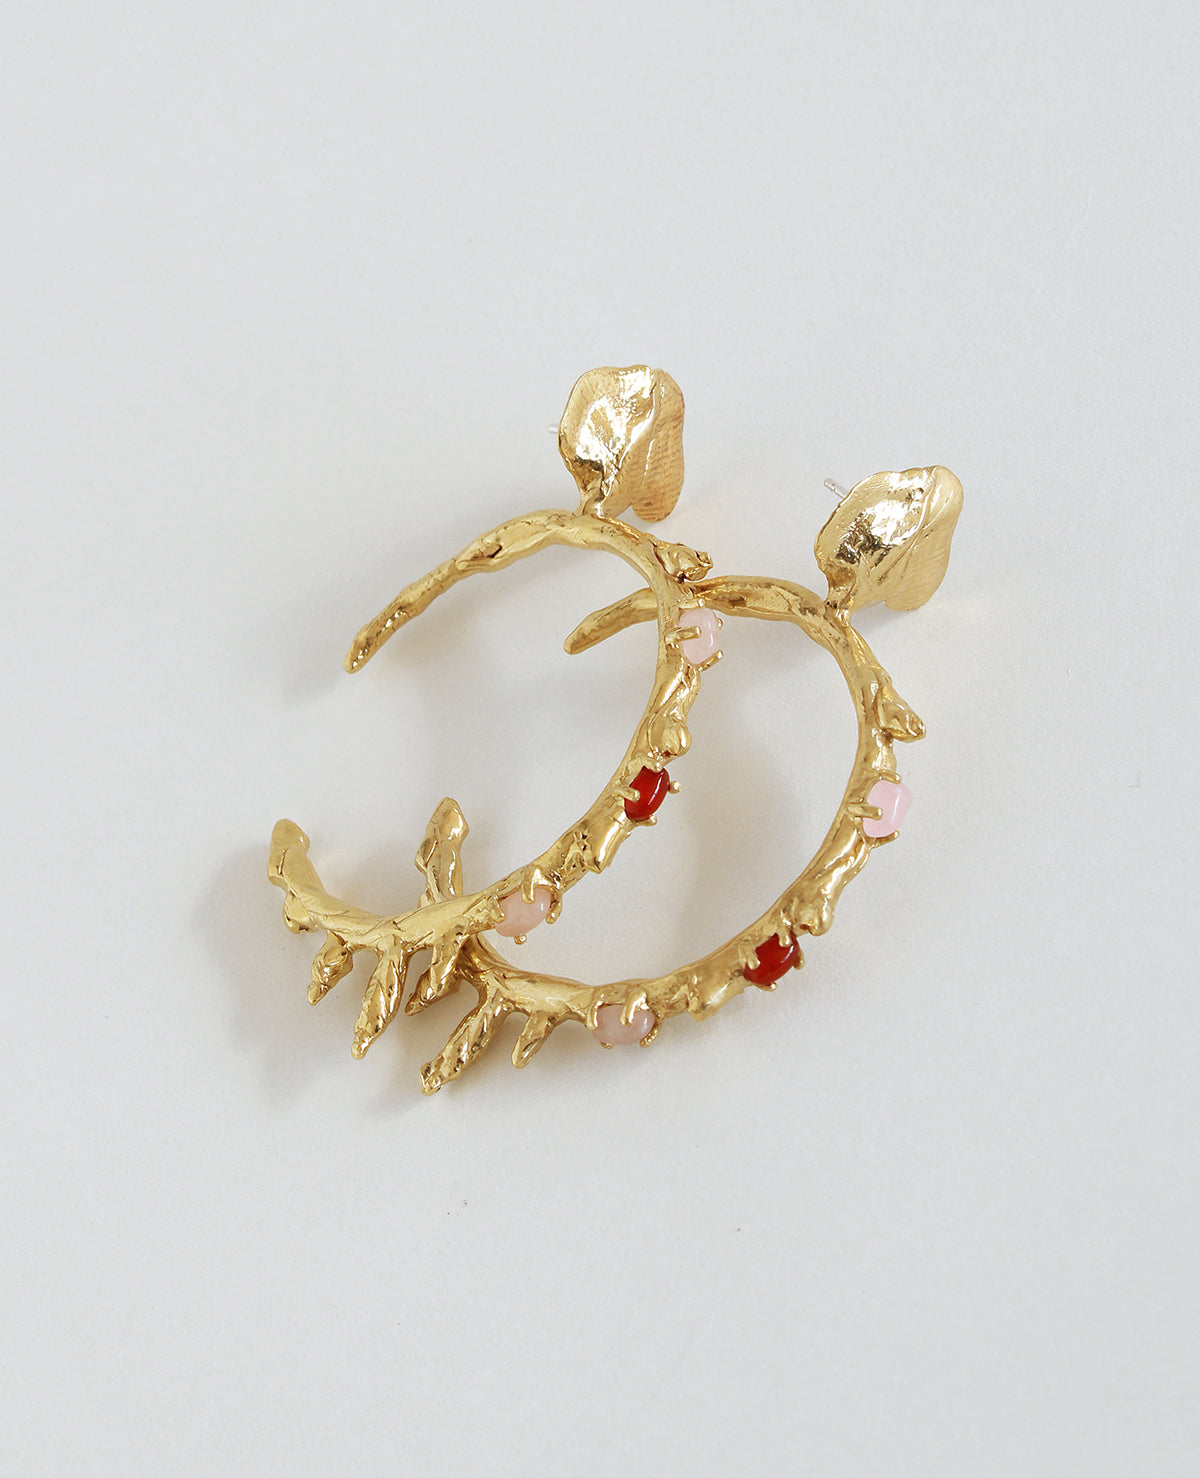 DON'T CRY // anneaux dorés - ORA-C jewelry - bijoux faits à la main par la designer indépendante montréalaise Caroline Pham